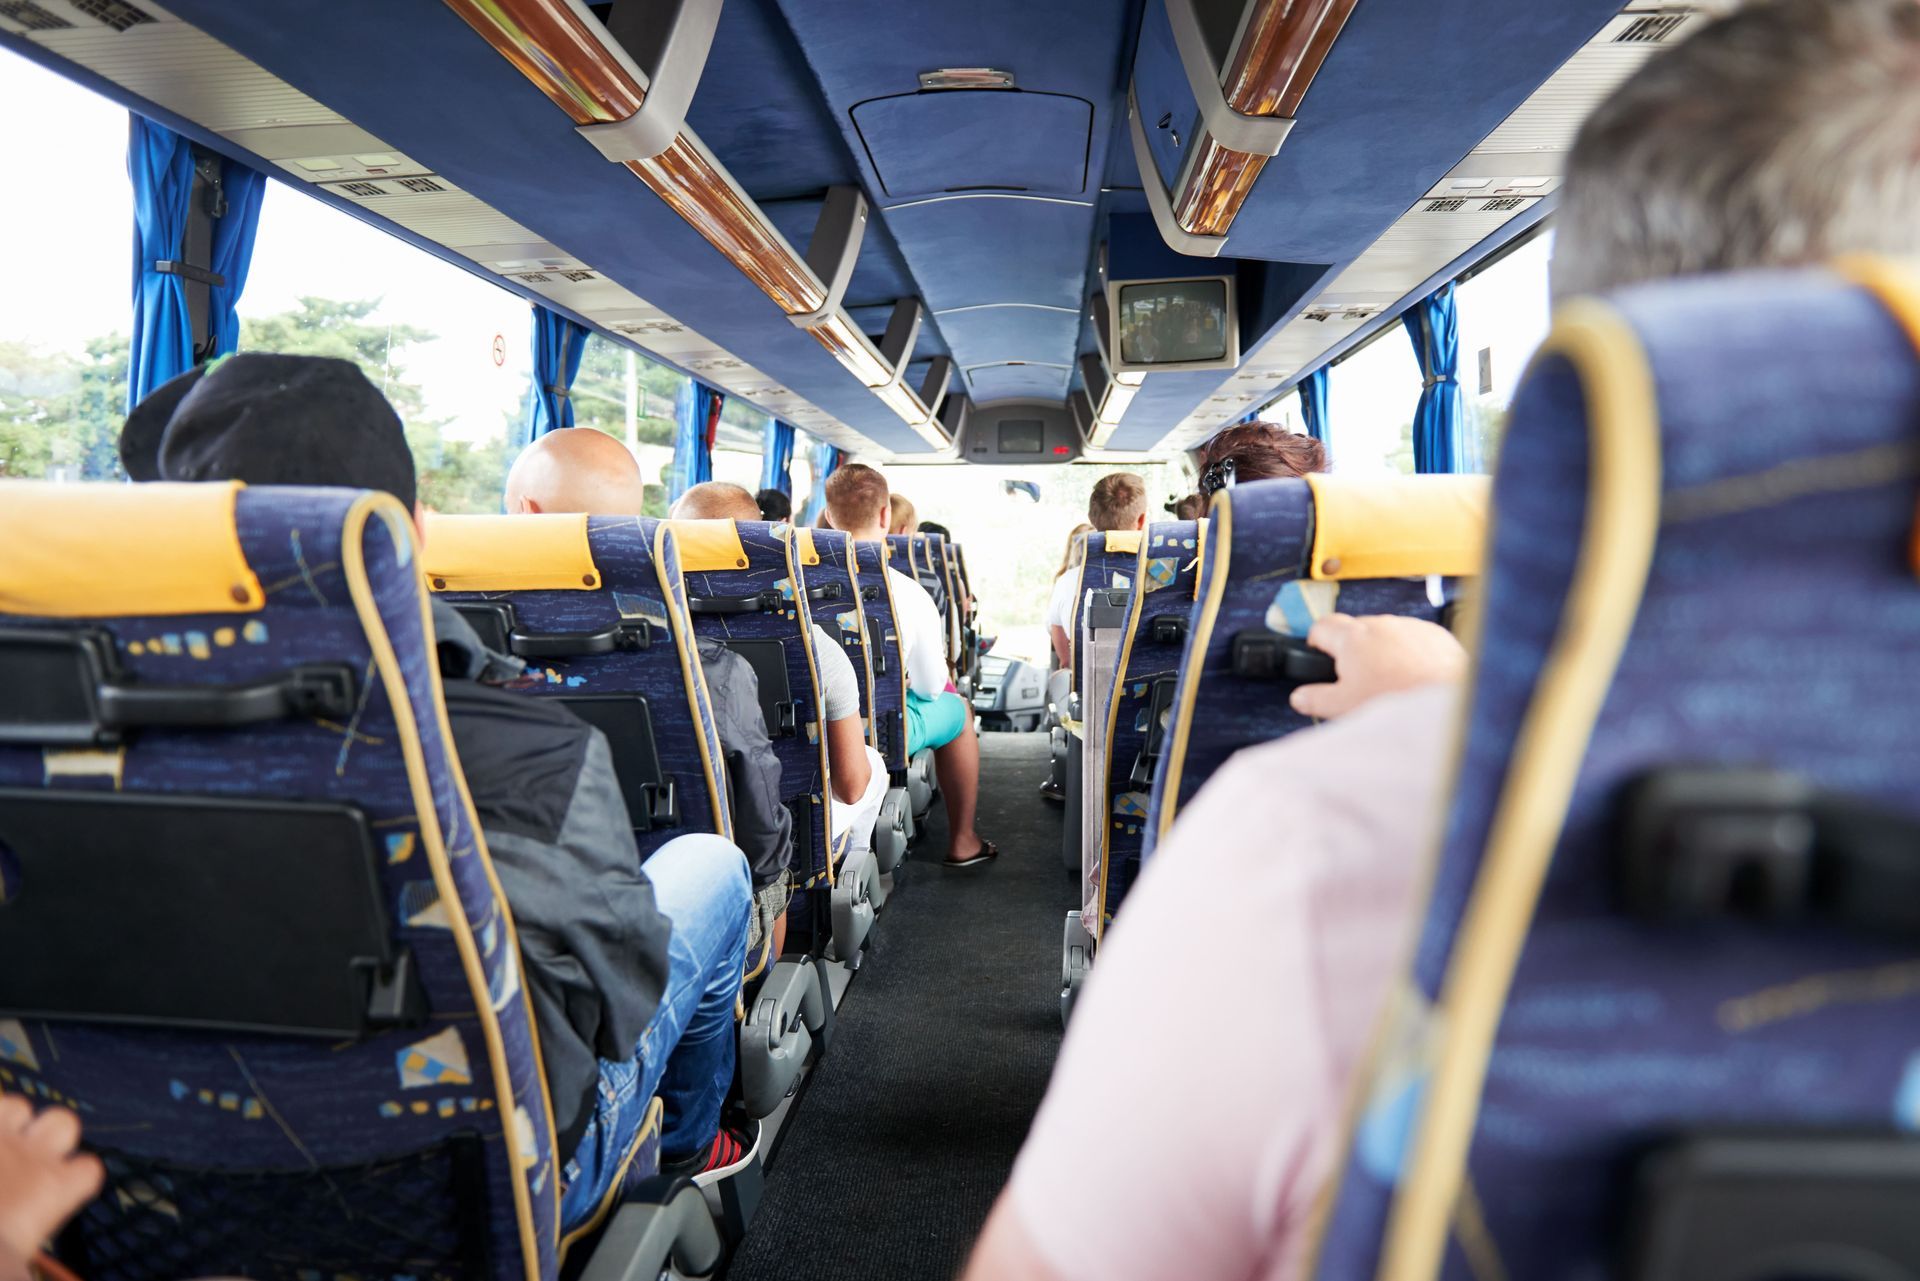 Teamausflug im gemieteten Bus – Ideen für gemeinsame Aktivitäten